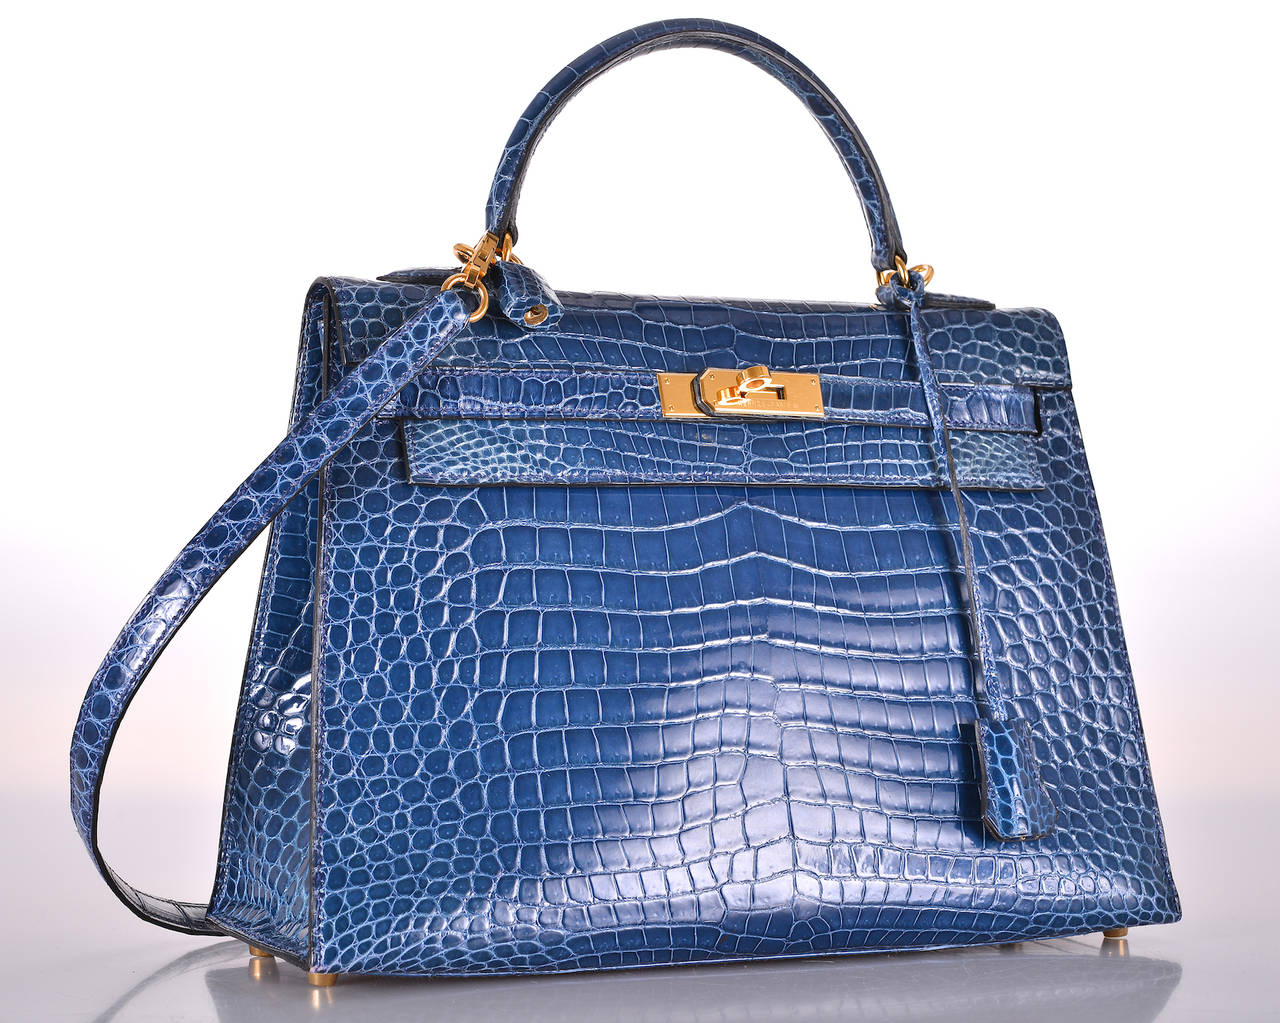 Women's HERMES KELLY BAG 32cm BLUE ROI POROSUS CROCODILE GOLD HARDWARE